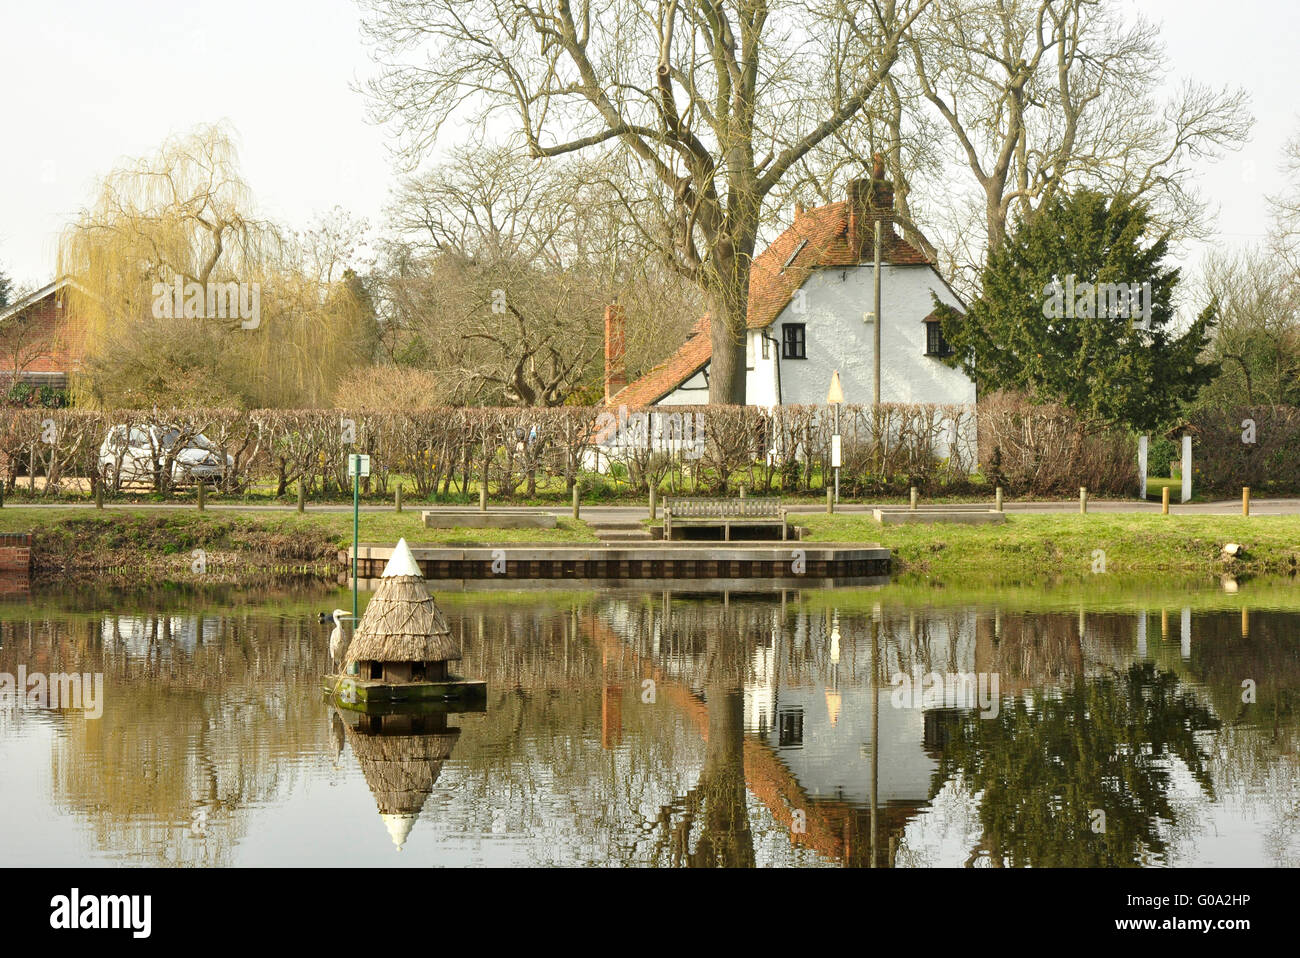 Berkshire - le village de l étang à Hurst - Réflexions - Chalets - un refuge d'oiseaux de chaume floating - point d'observation un héron Banque D'Images